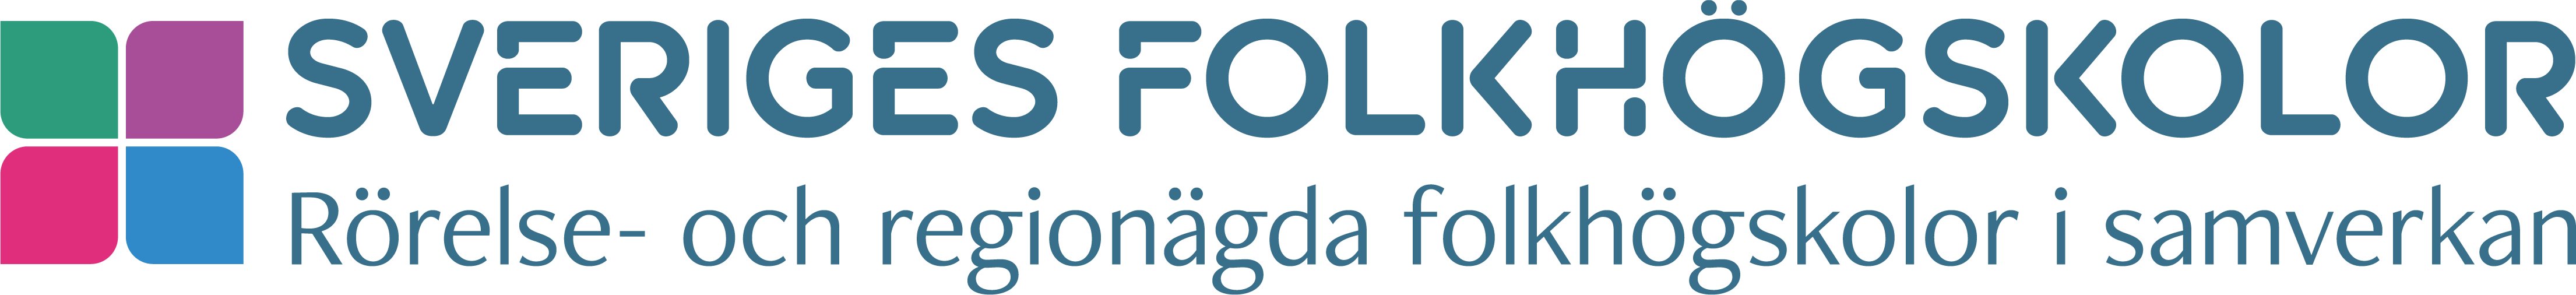 Sveriges folkhögskolor logotyp